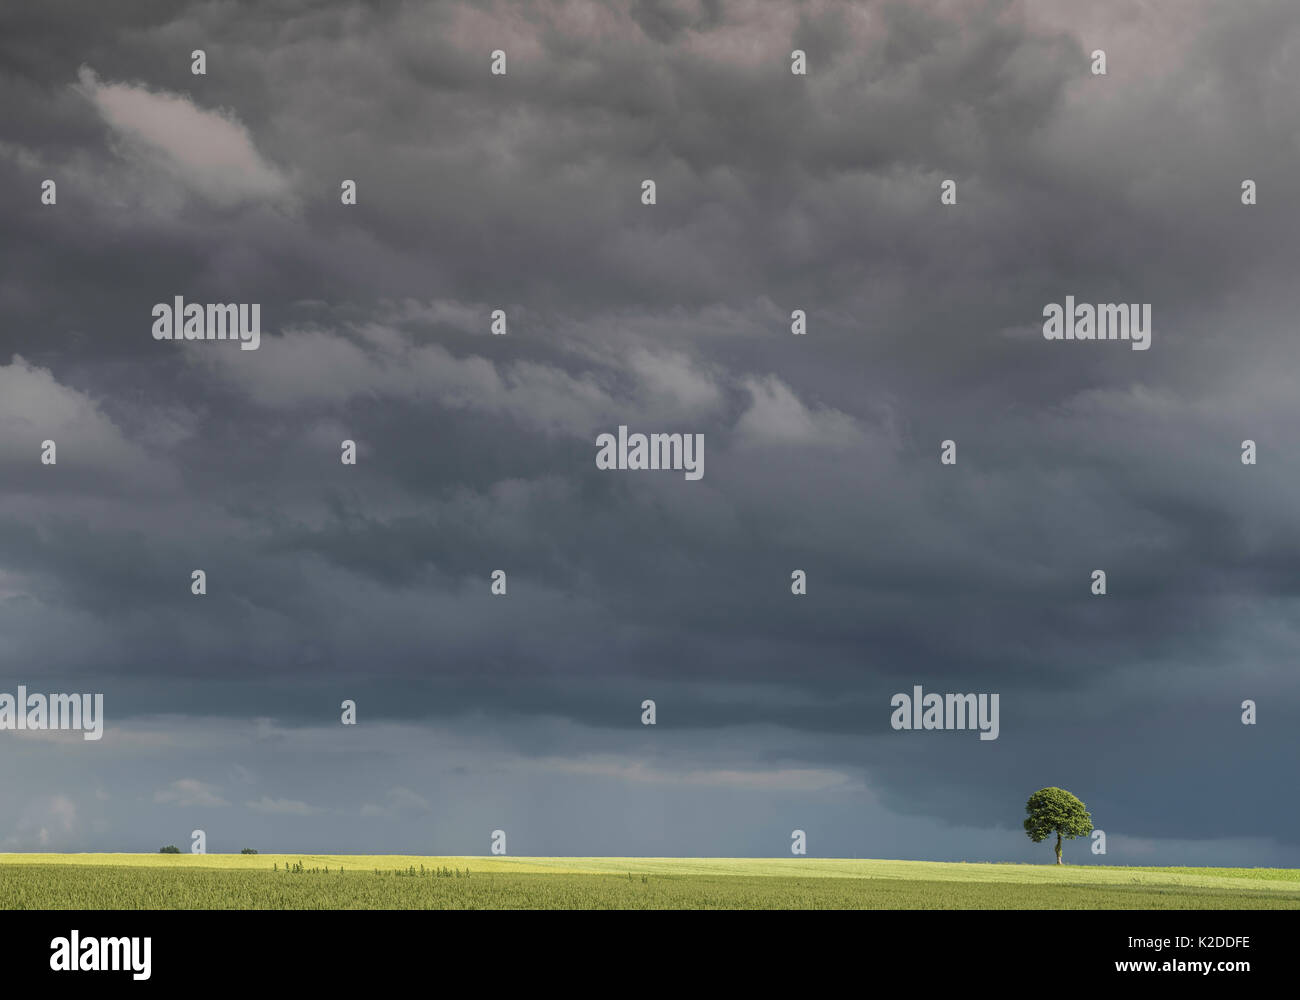 Champ de lin (Linum usitatissimum) avec un seul arbre dans la distance sous de grands ciel avec nuages sombres, Guy Saint André, Pas de Calais, France, juin 2016. Banque D'Images